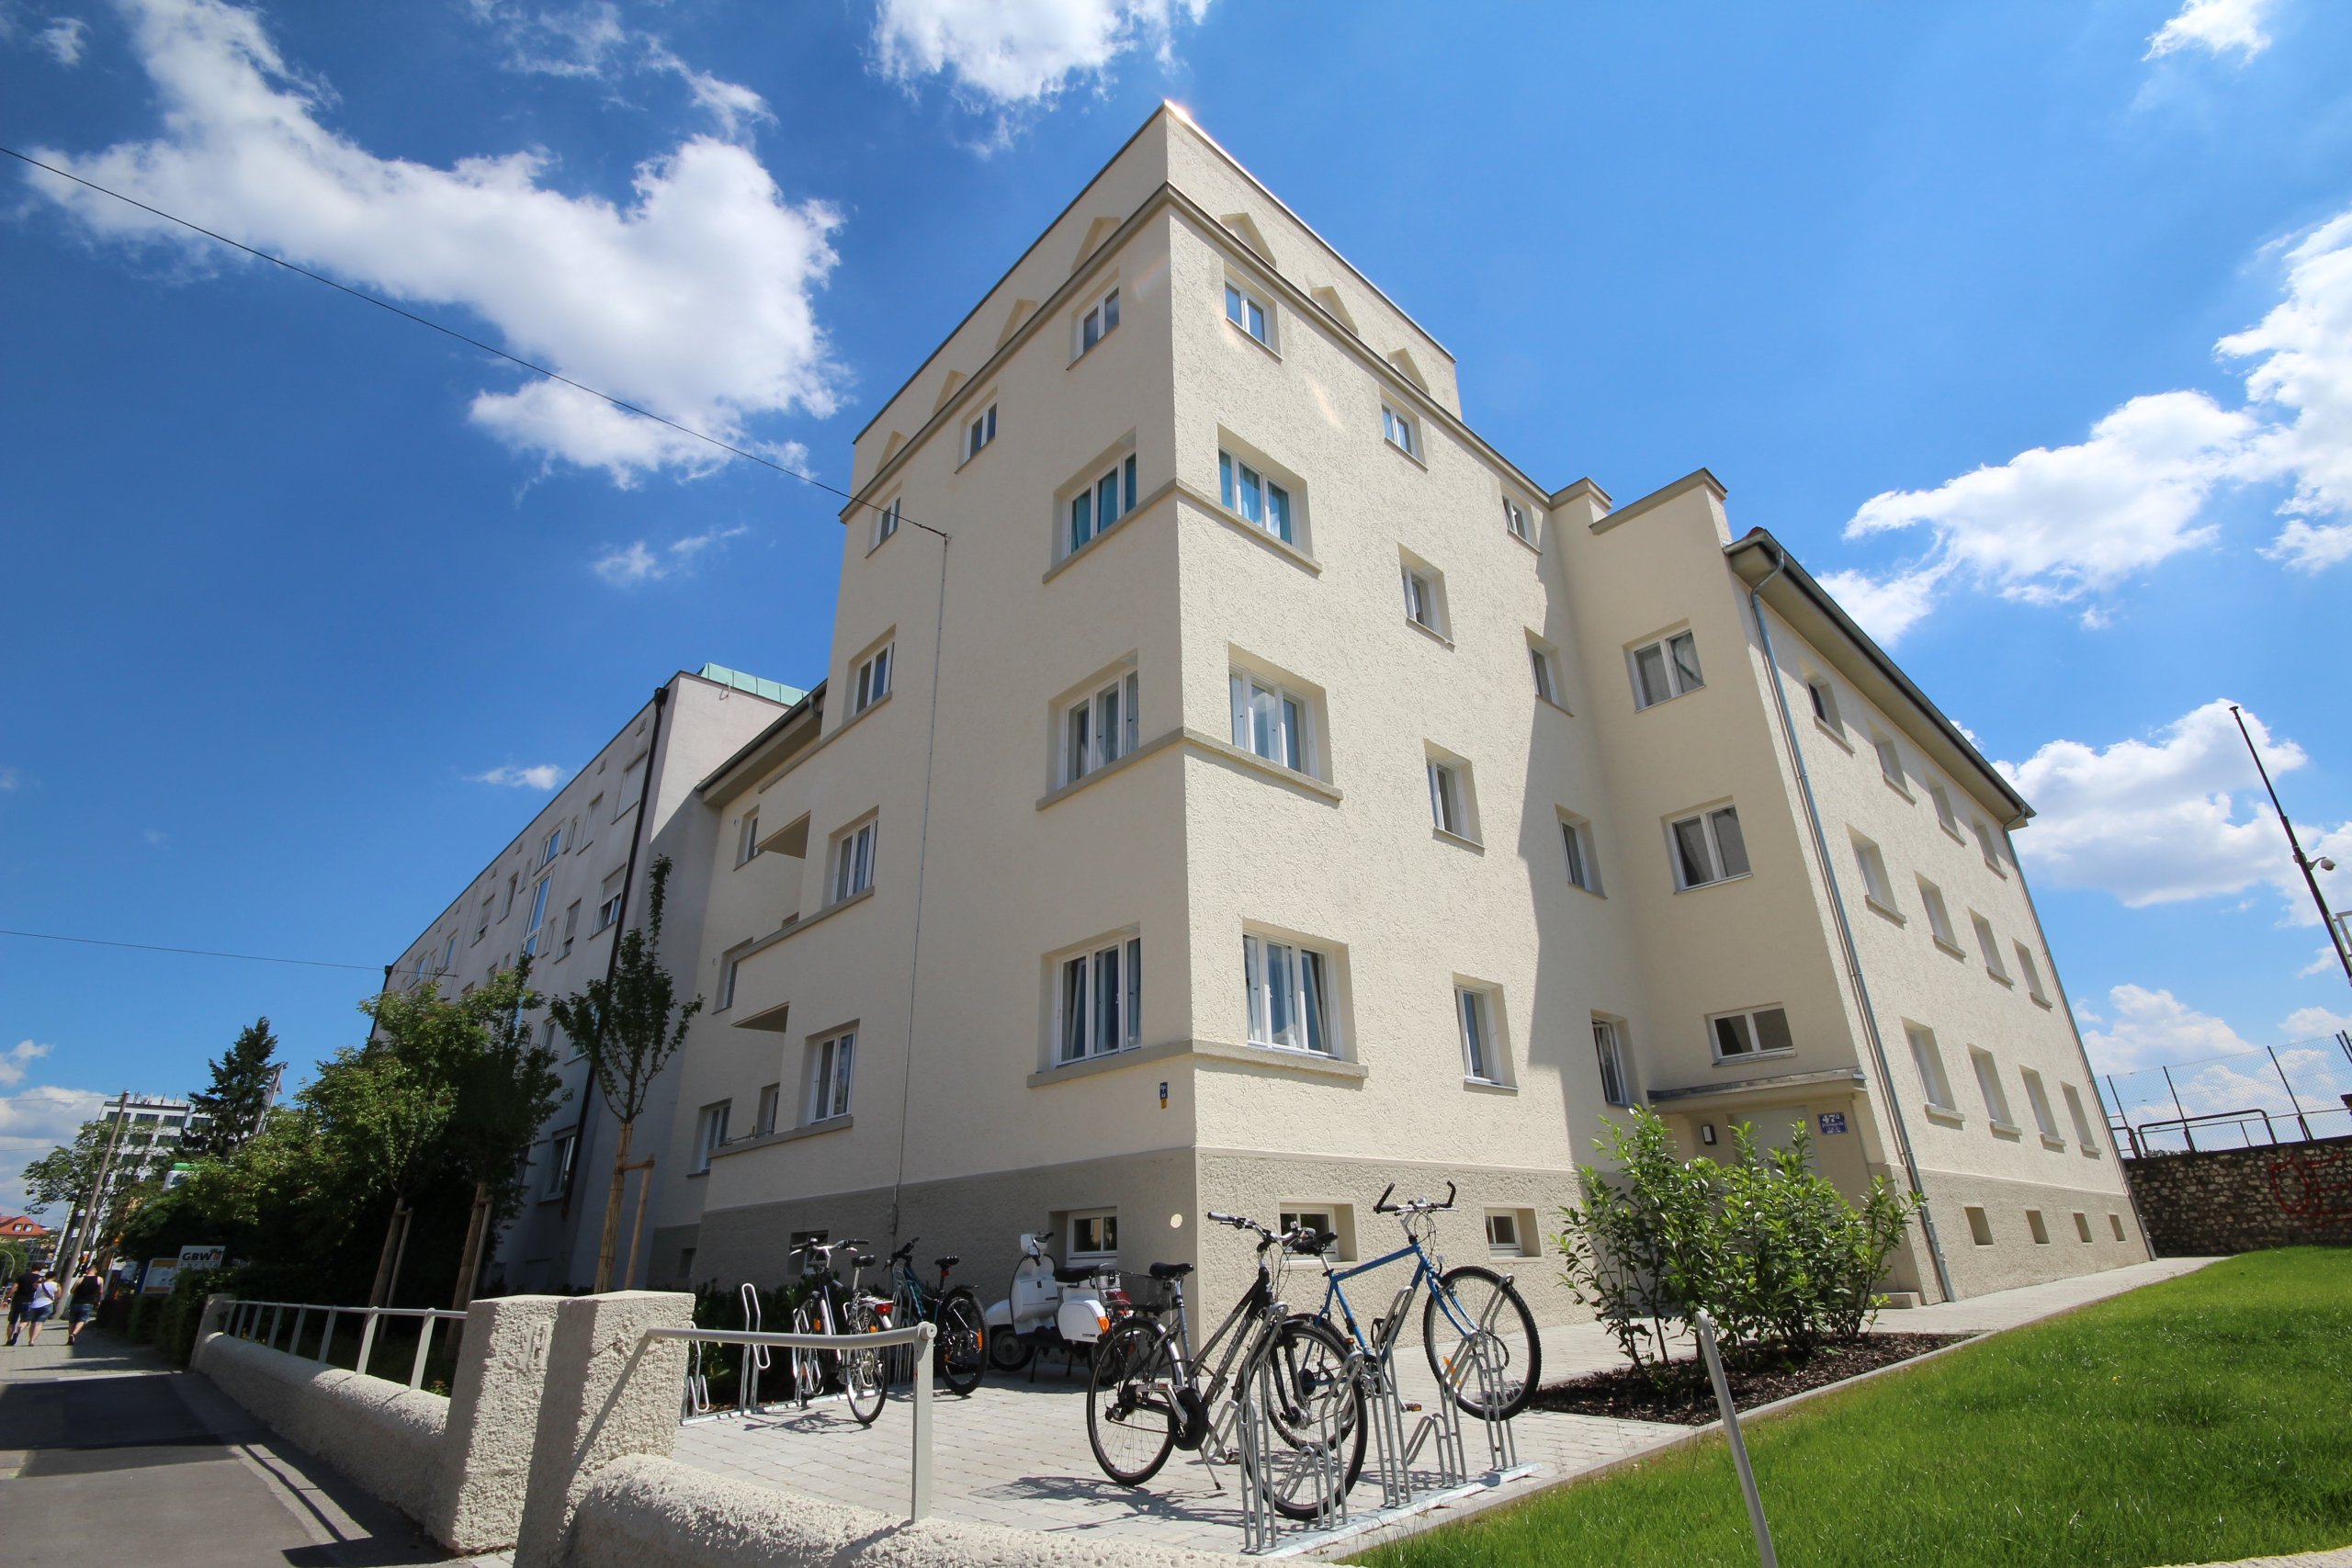 Rennplatz Immobilien Regensburg Vermietete Neubauprojekte